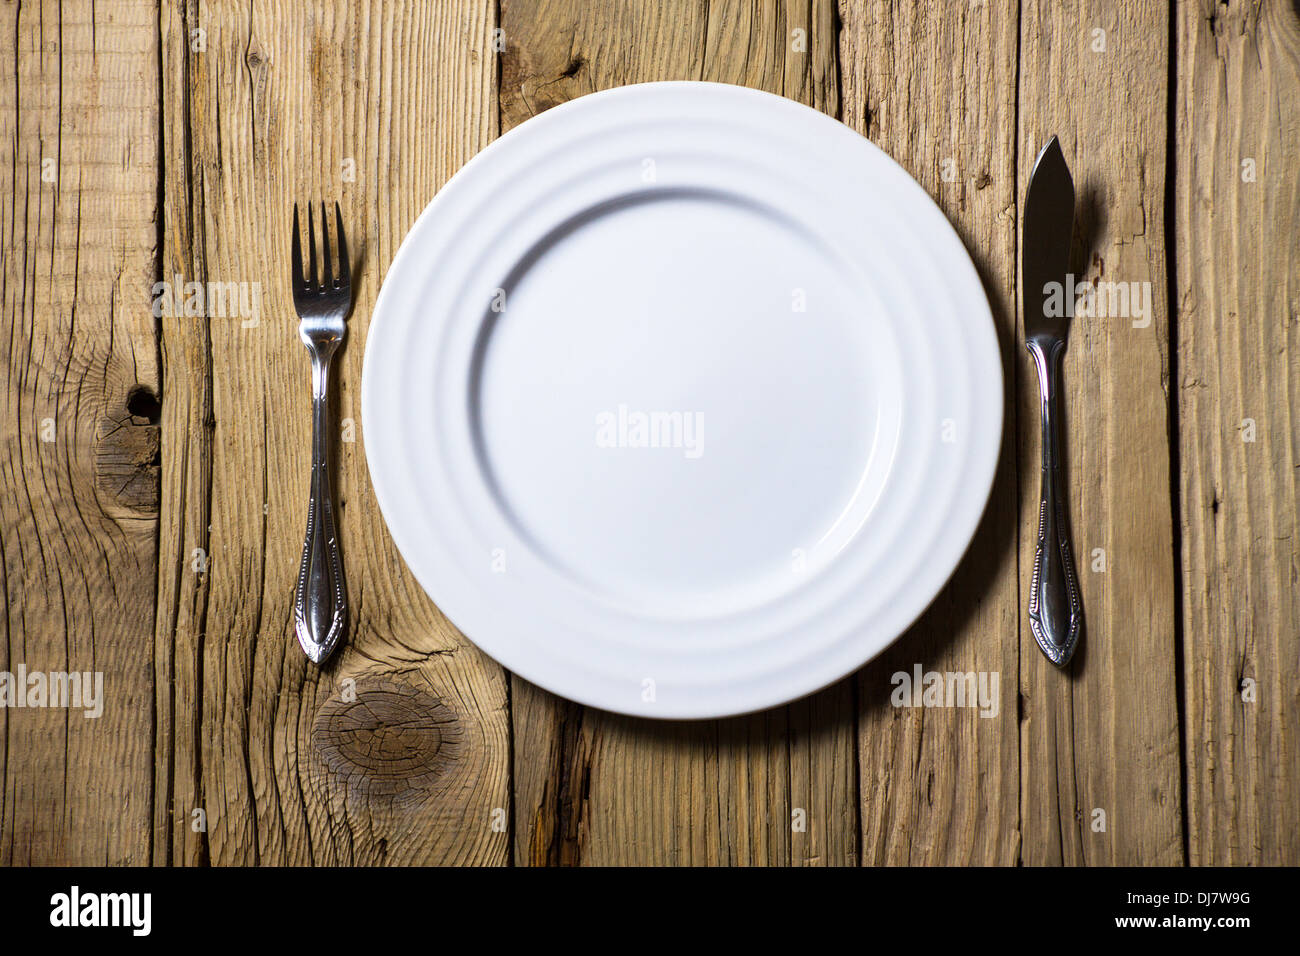 Posate e piastra bianca su tavola in legno rustico Foto Stock